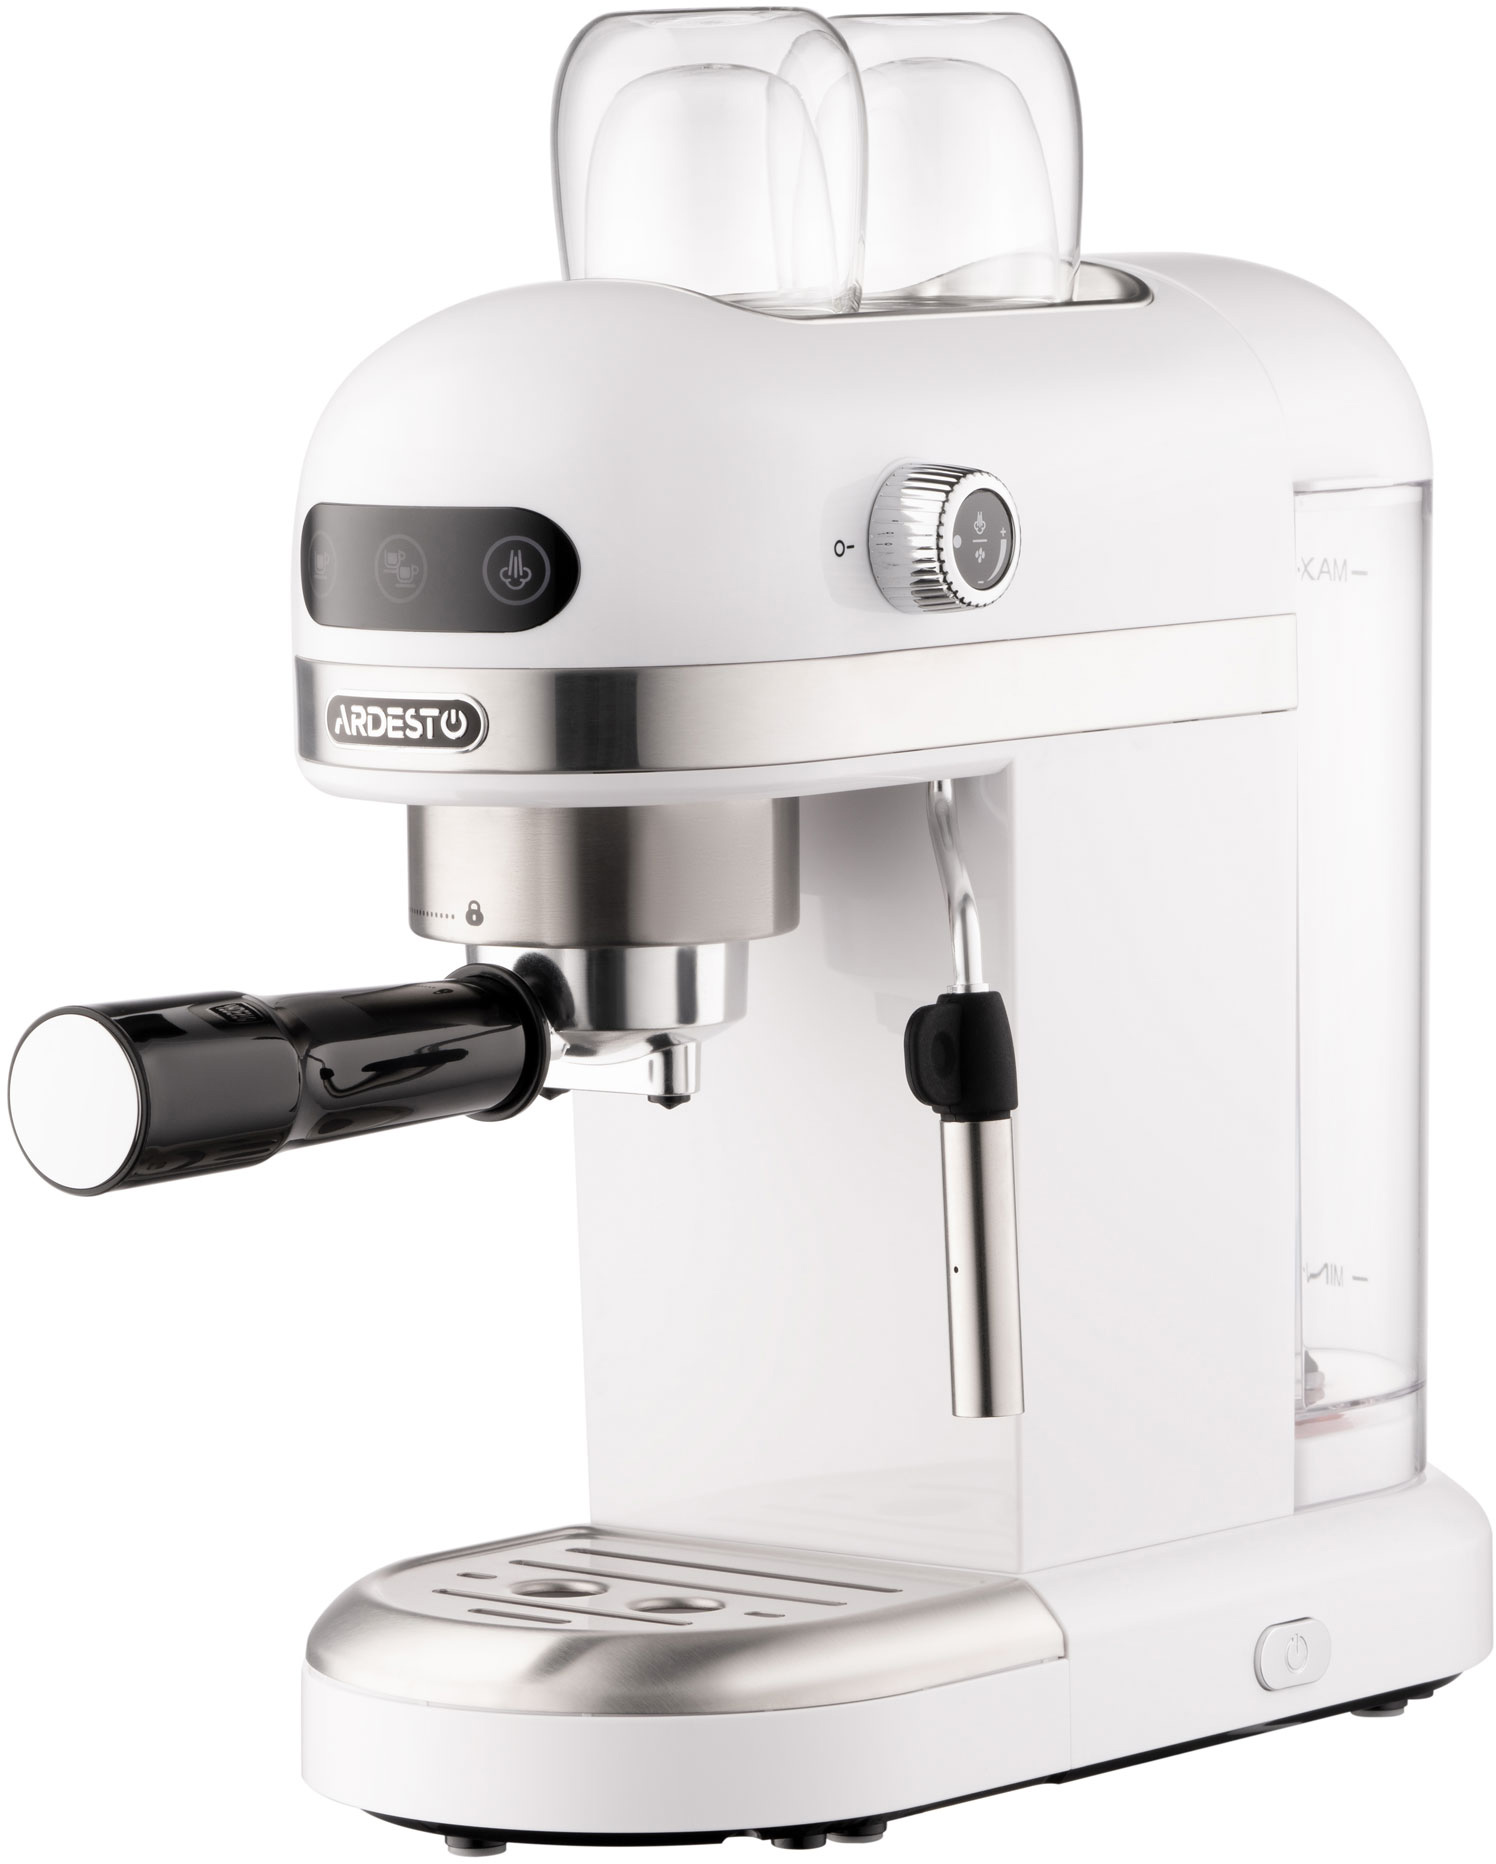 Кофеварка Ardesto YCM-E1500 отзывы - изображения 5